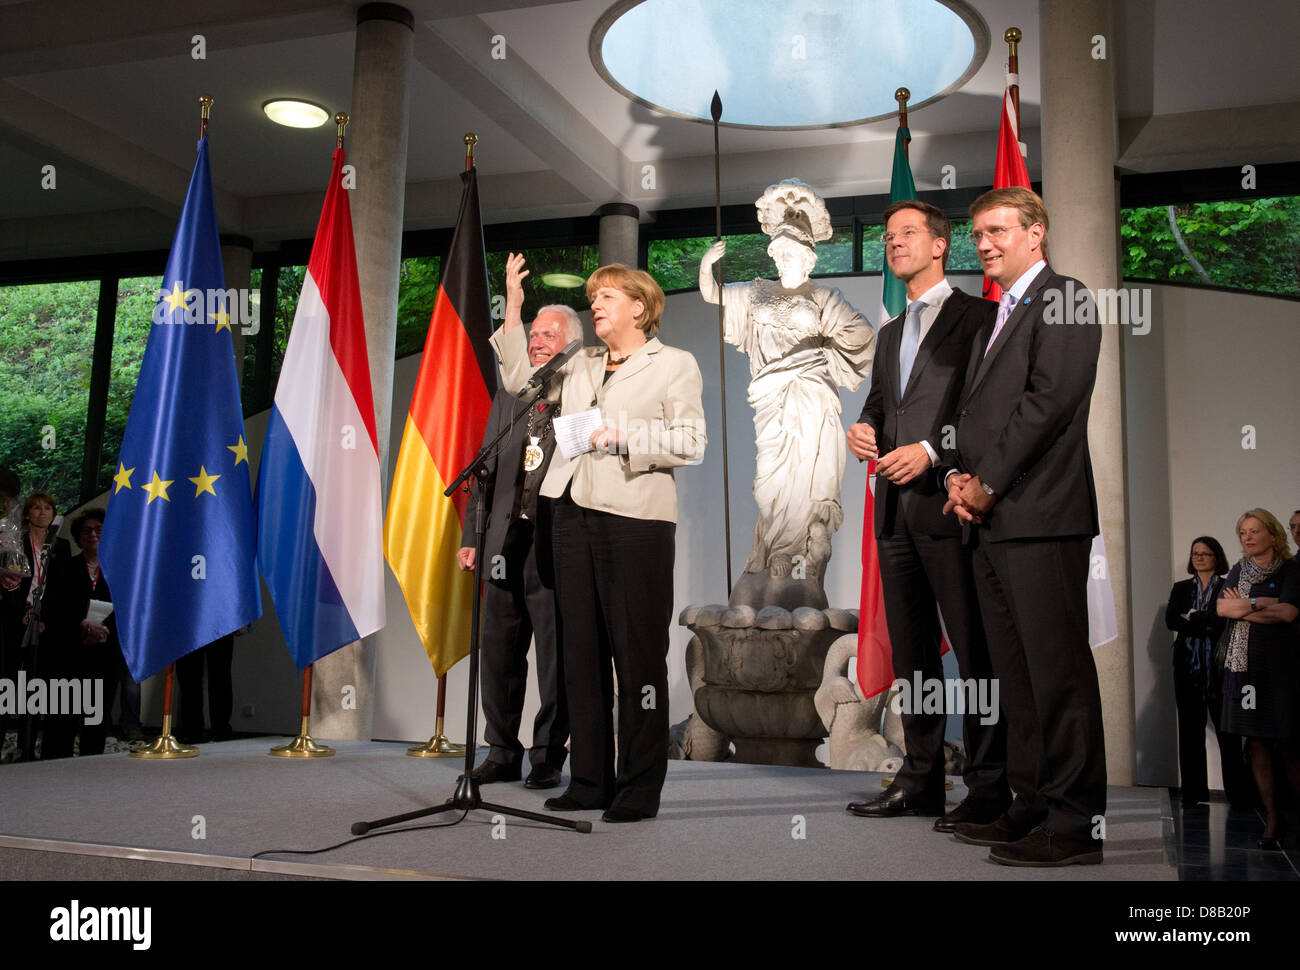 La canciller alemana, Angela Merkel, habla durante una recepción para la primera reunión del Gabinete germano-holandesa con el Alcalde de Kleve Theodor Brauer (L), así como el primer ministro holandés, Mark Rutte (2-R) y la Cancillería, Ministro Roland Pofalla (R) en el Kurhaus Museo en Kleve, Alemania, 23 de mayo de 2013. Foto: Bernd Thyssen Foto de stock